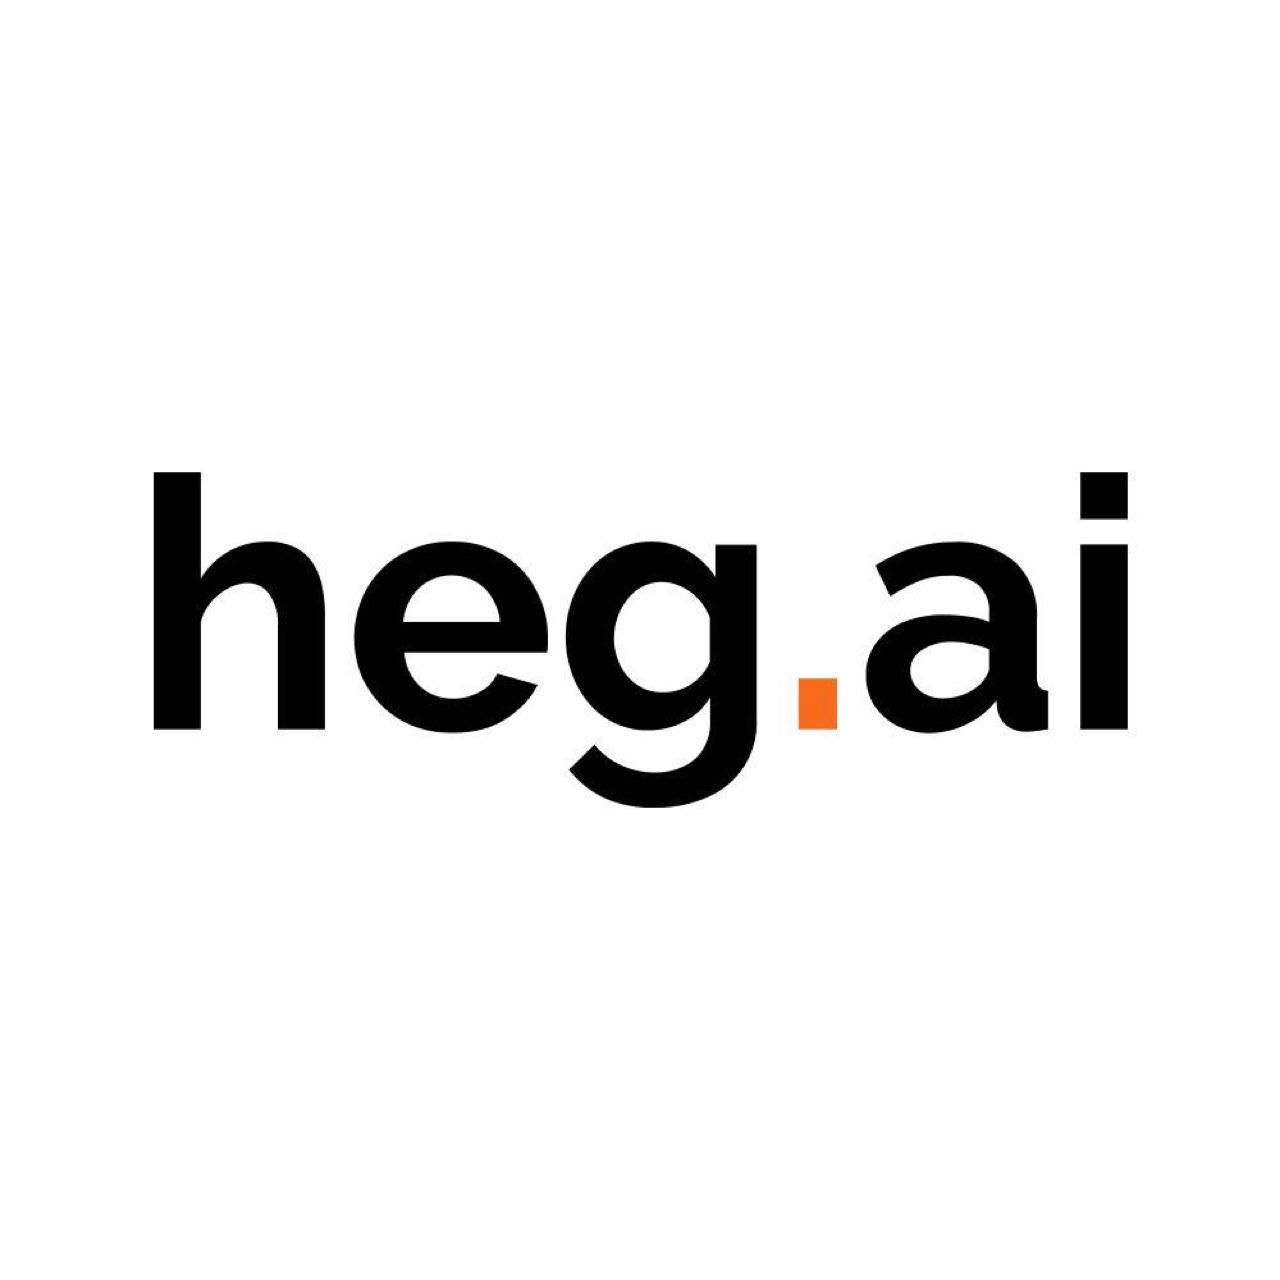  Сообщество Hegai для IT-предпринимателей и специалистов 